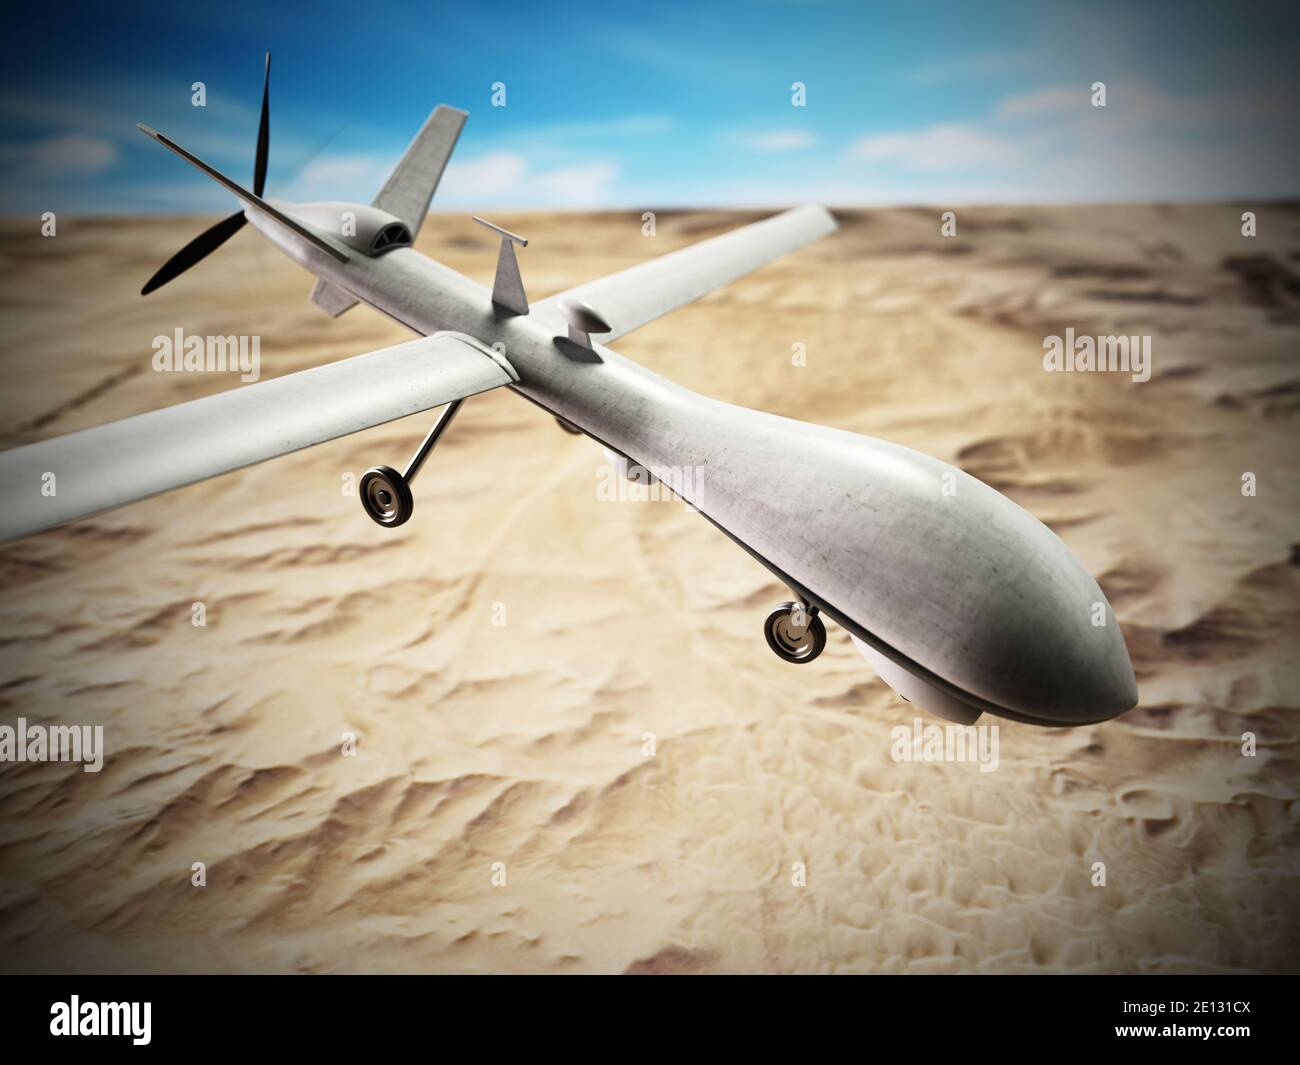 Un drone militaire blanc sans pilote dans les airs. Illustration 3D. Banque D'Images